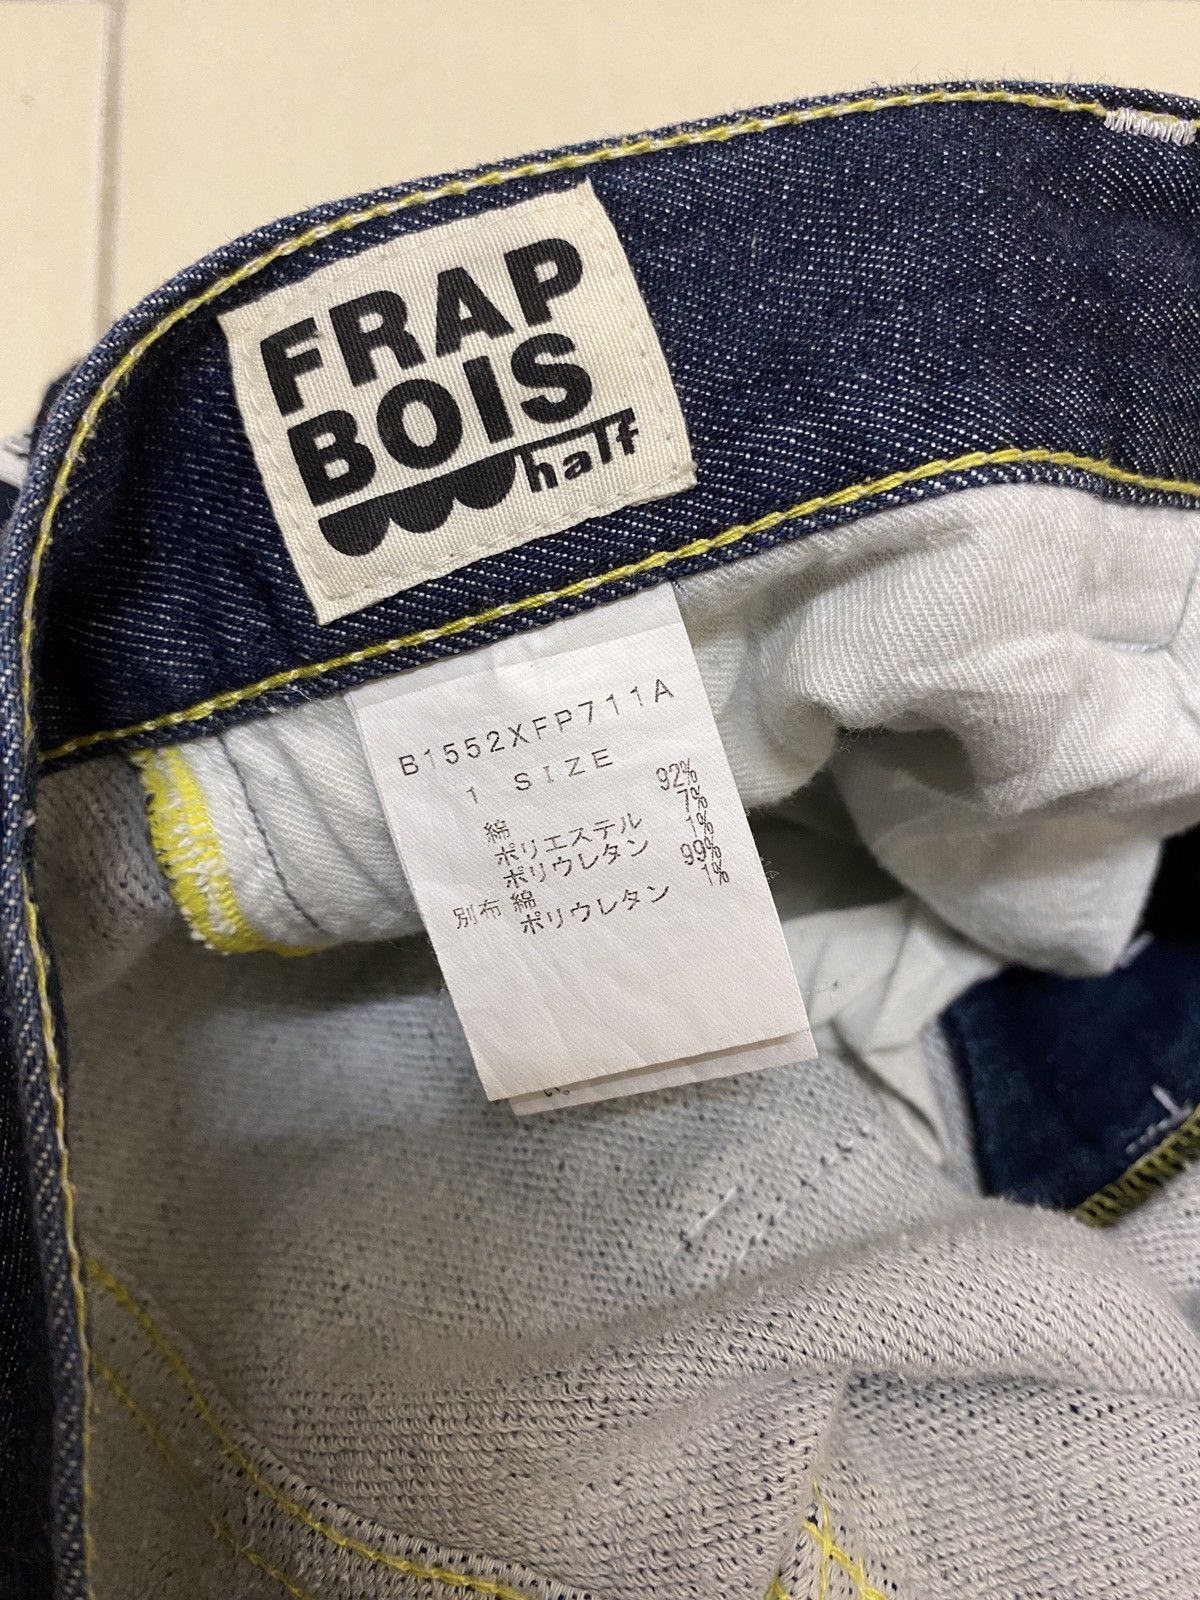 Frapbois half woman soft jeans - 6